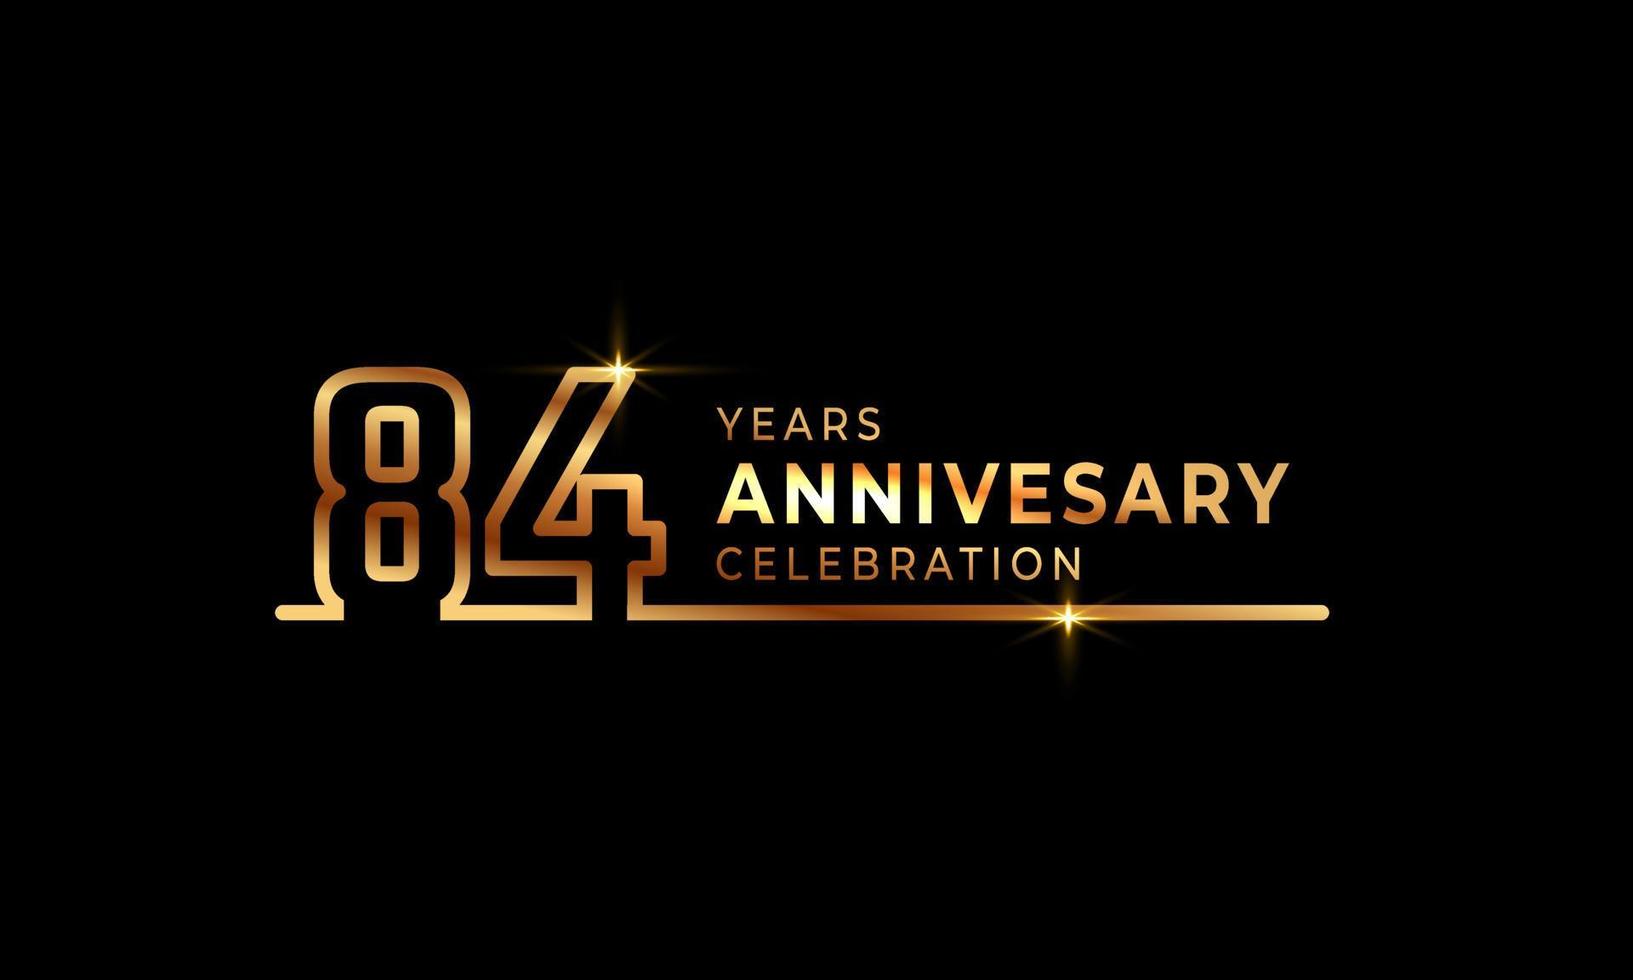 84-jarig jubileumviering logo met gouden gekleurde lettertypenummers gemaakt van één verbonden lijn voor feestgebeurtenis, bruiloft, wenskaart en uitnodiging geïsoleerd op donkere achtergrond vector